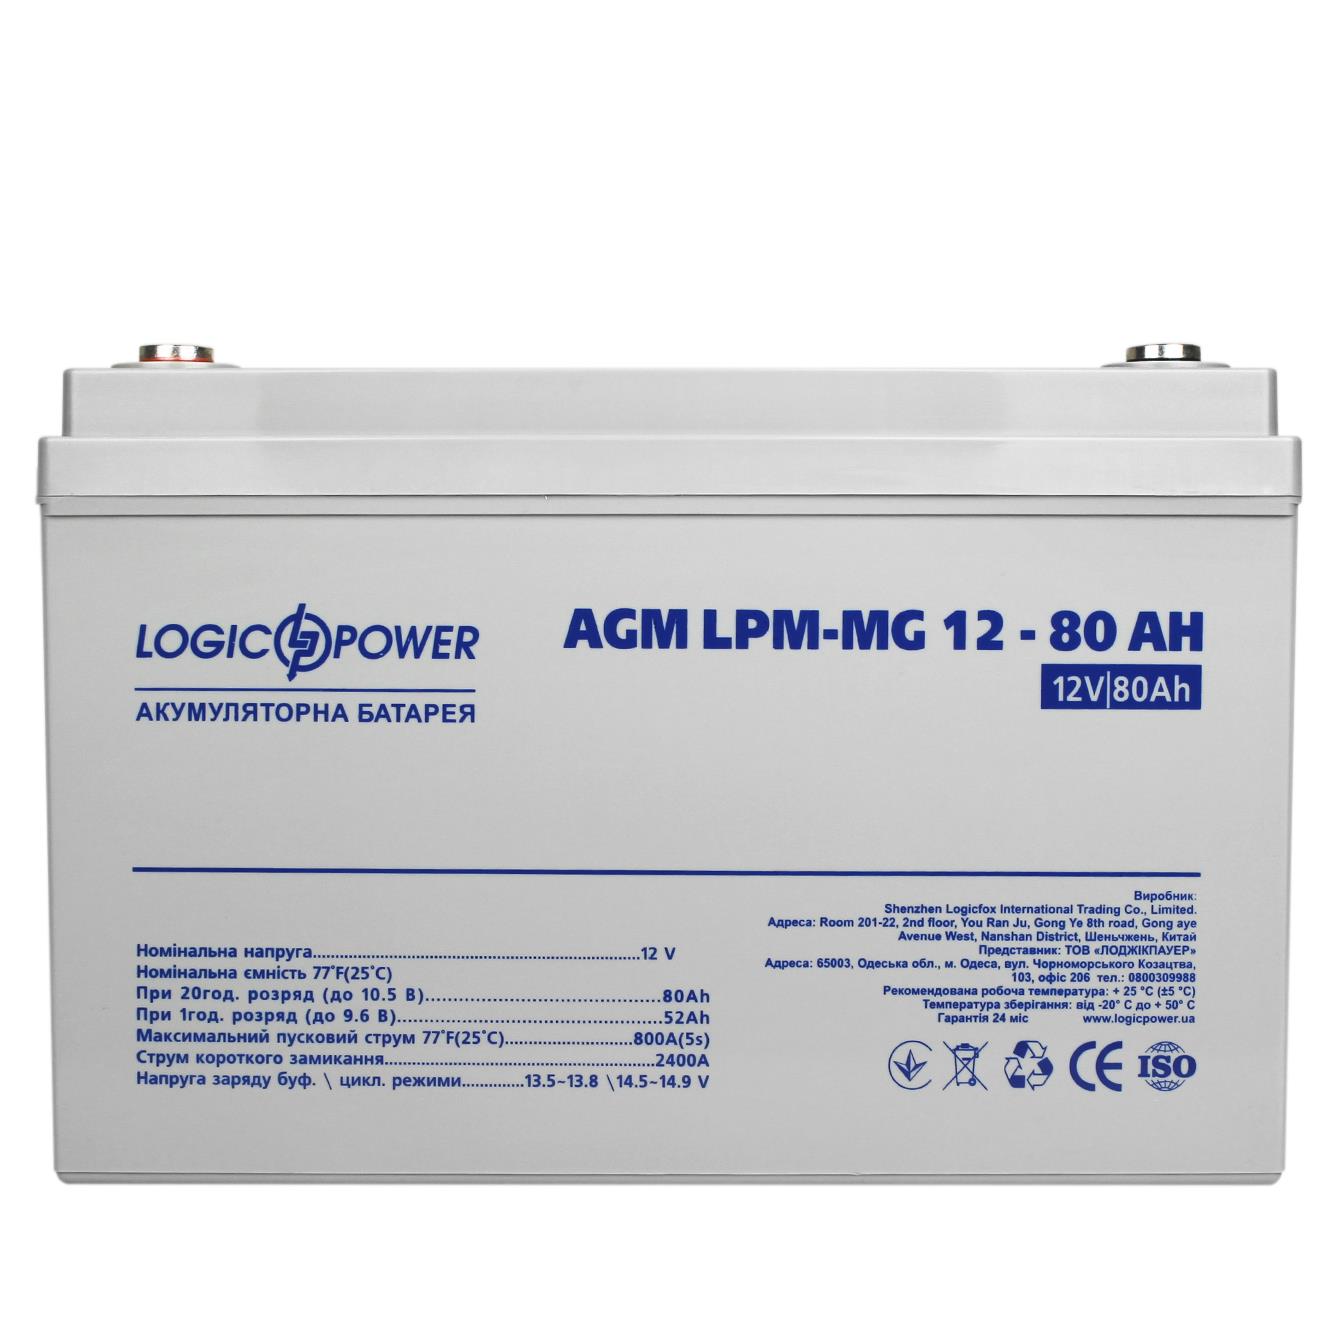 продаём LogicPower LPM-MG 12V - 80 Ah (4196) в Украине - фото 4